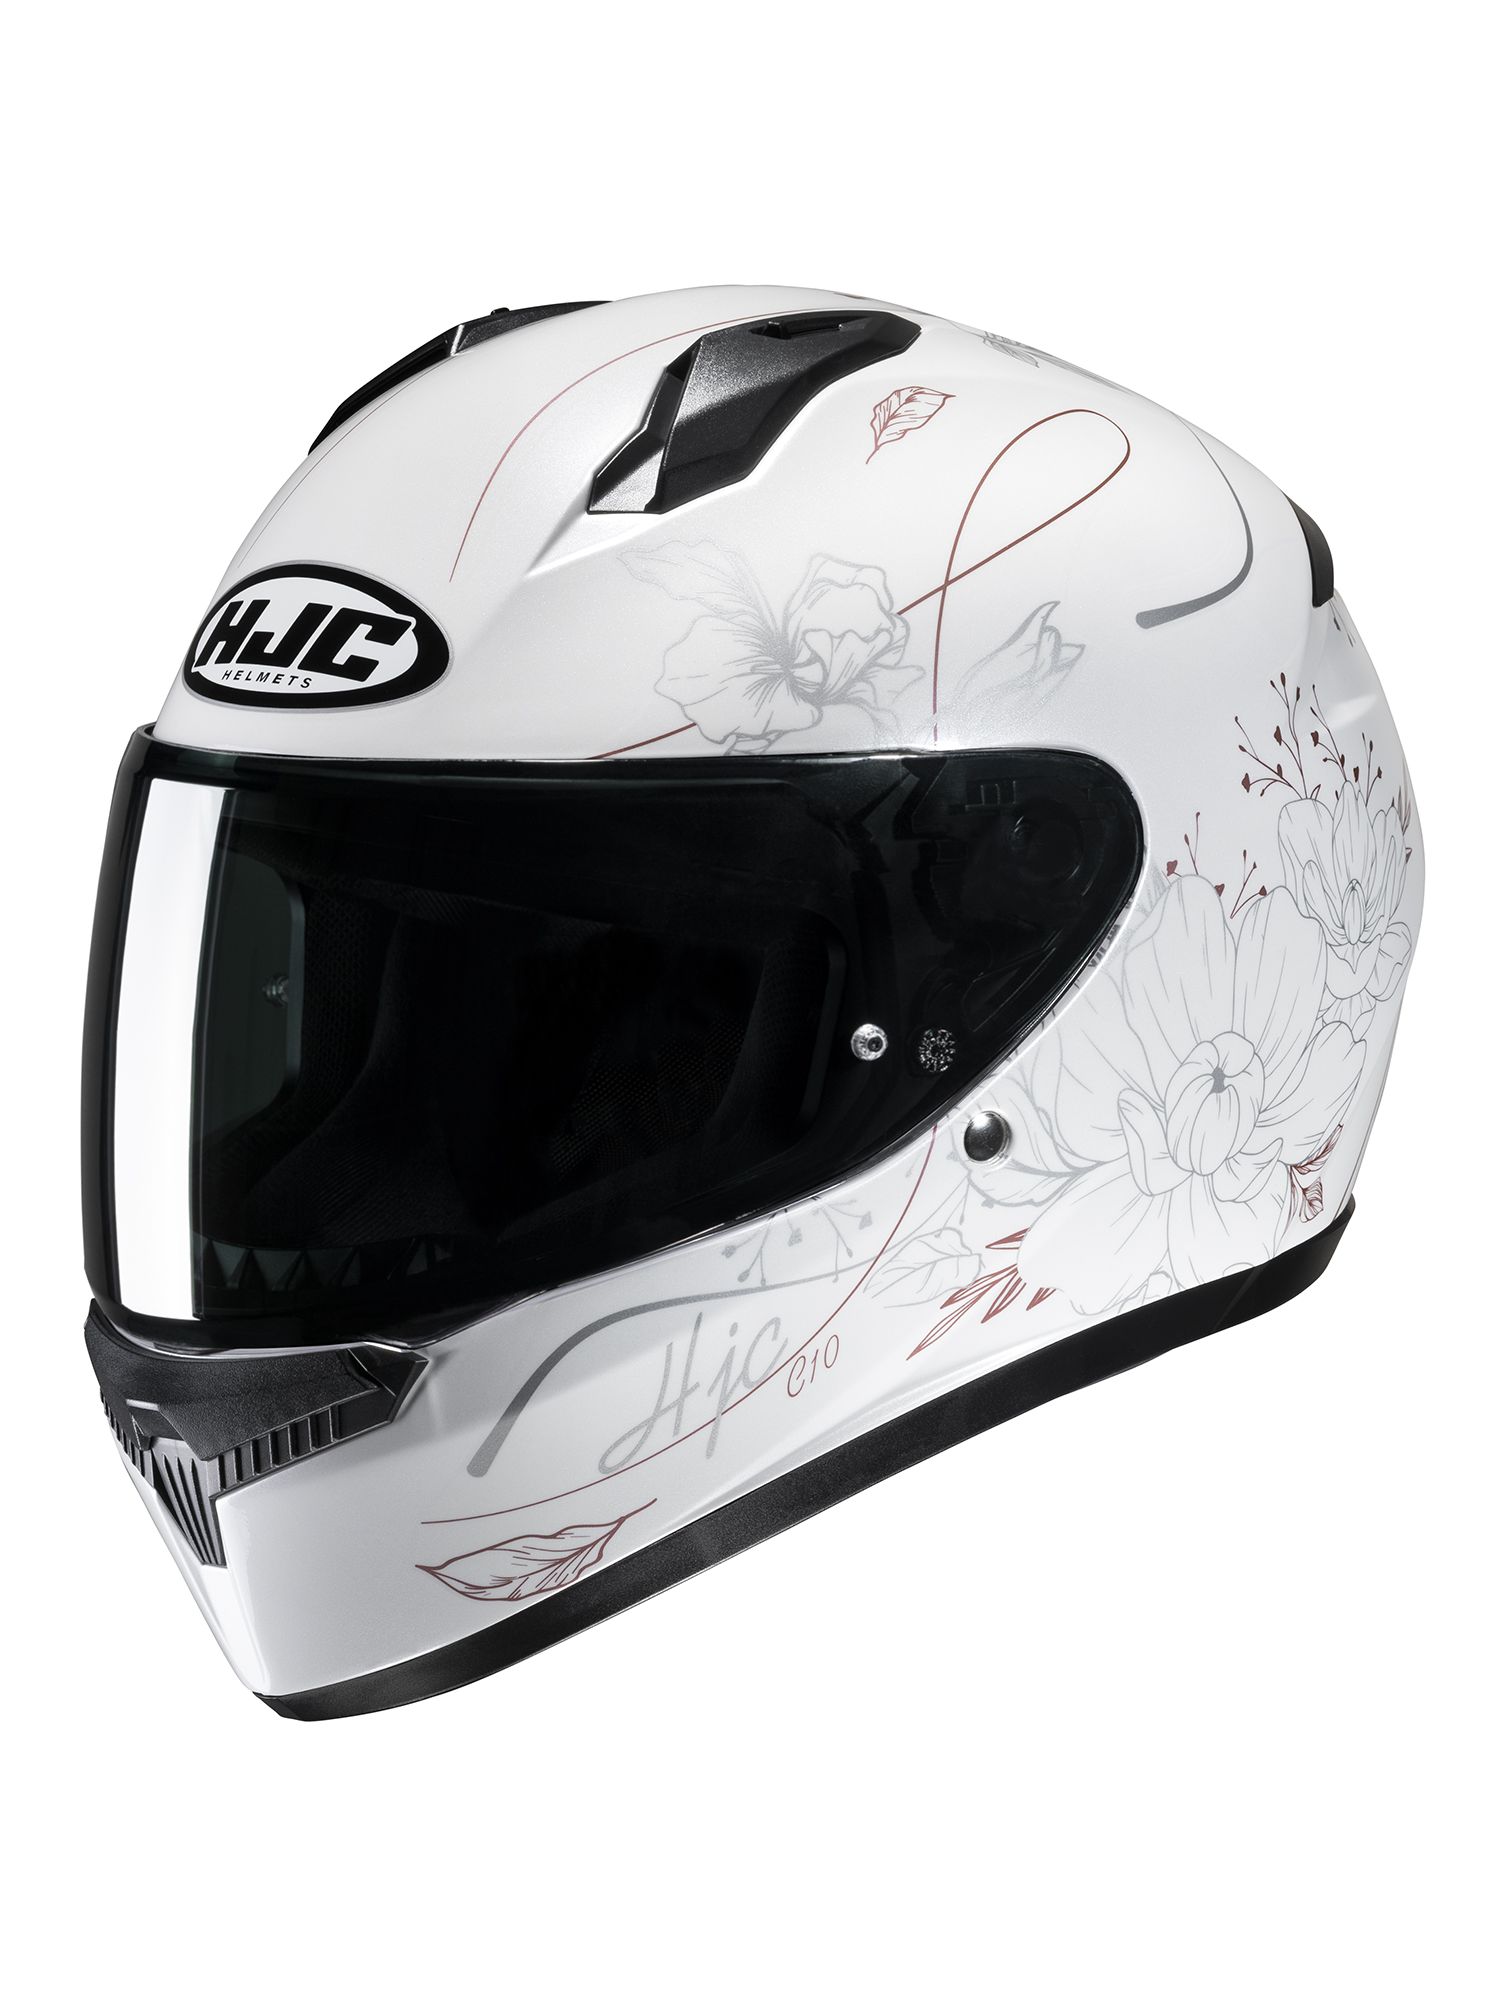 ウィンターセール開催中 HJC Helmets:C10 エピック WHITE(MC8) M